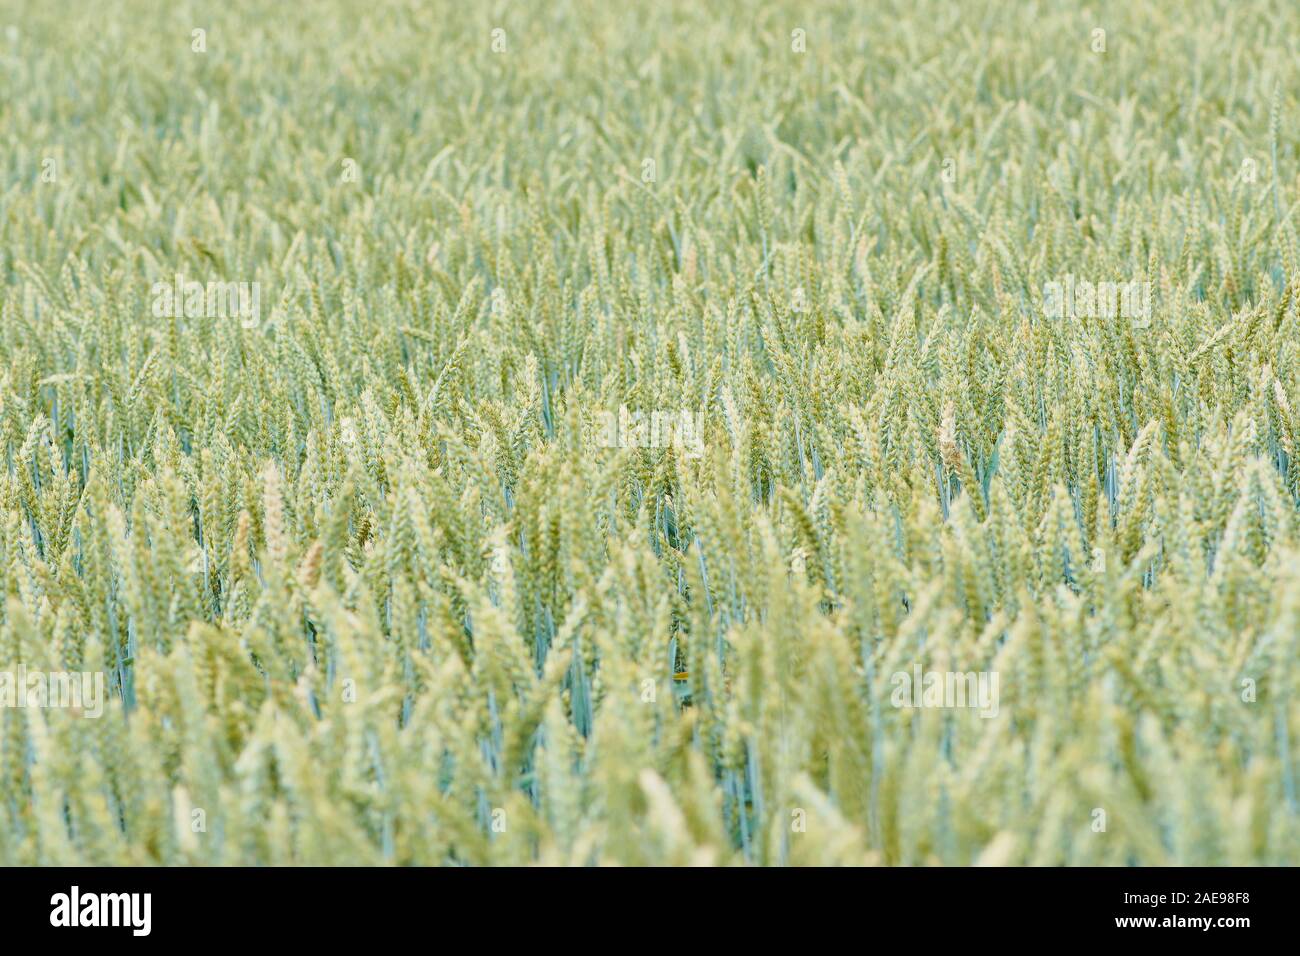 Verschwommene Farbe Bild von Weizen als Bild Hintergrund, Rahmen befüllen Stockfoto